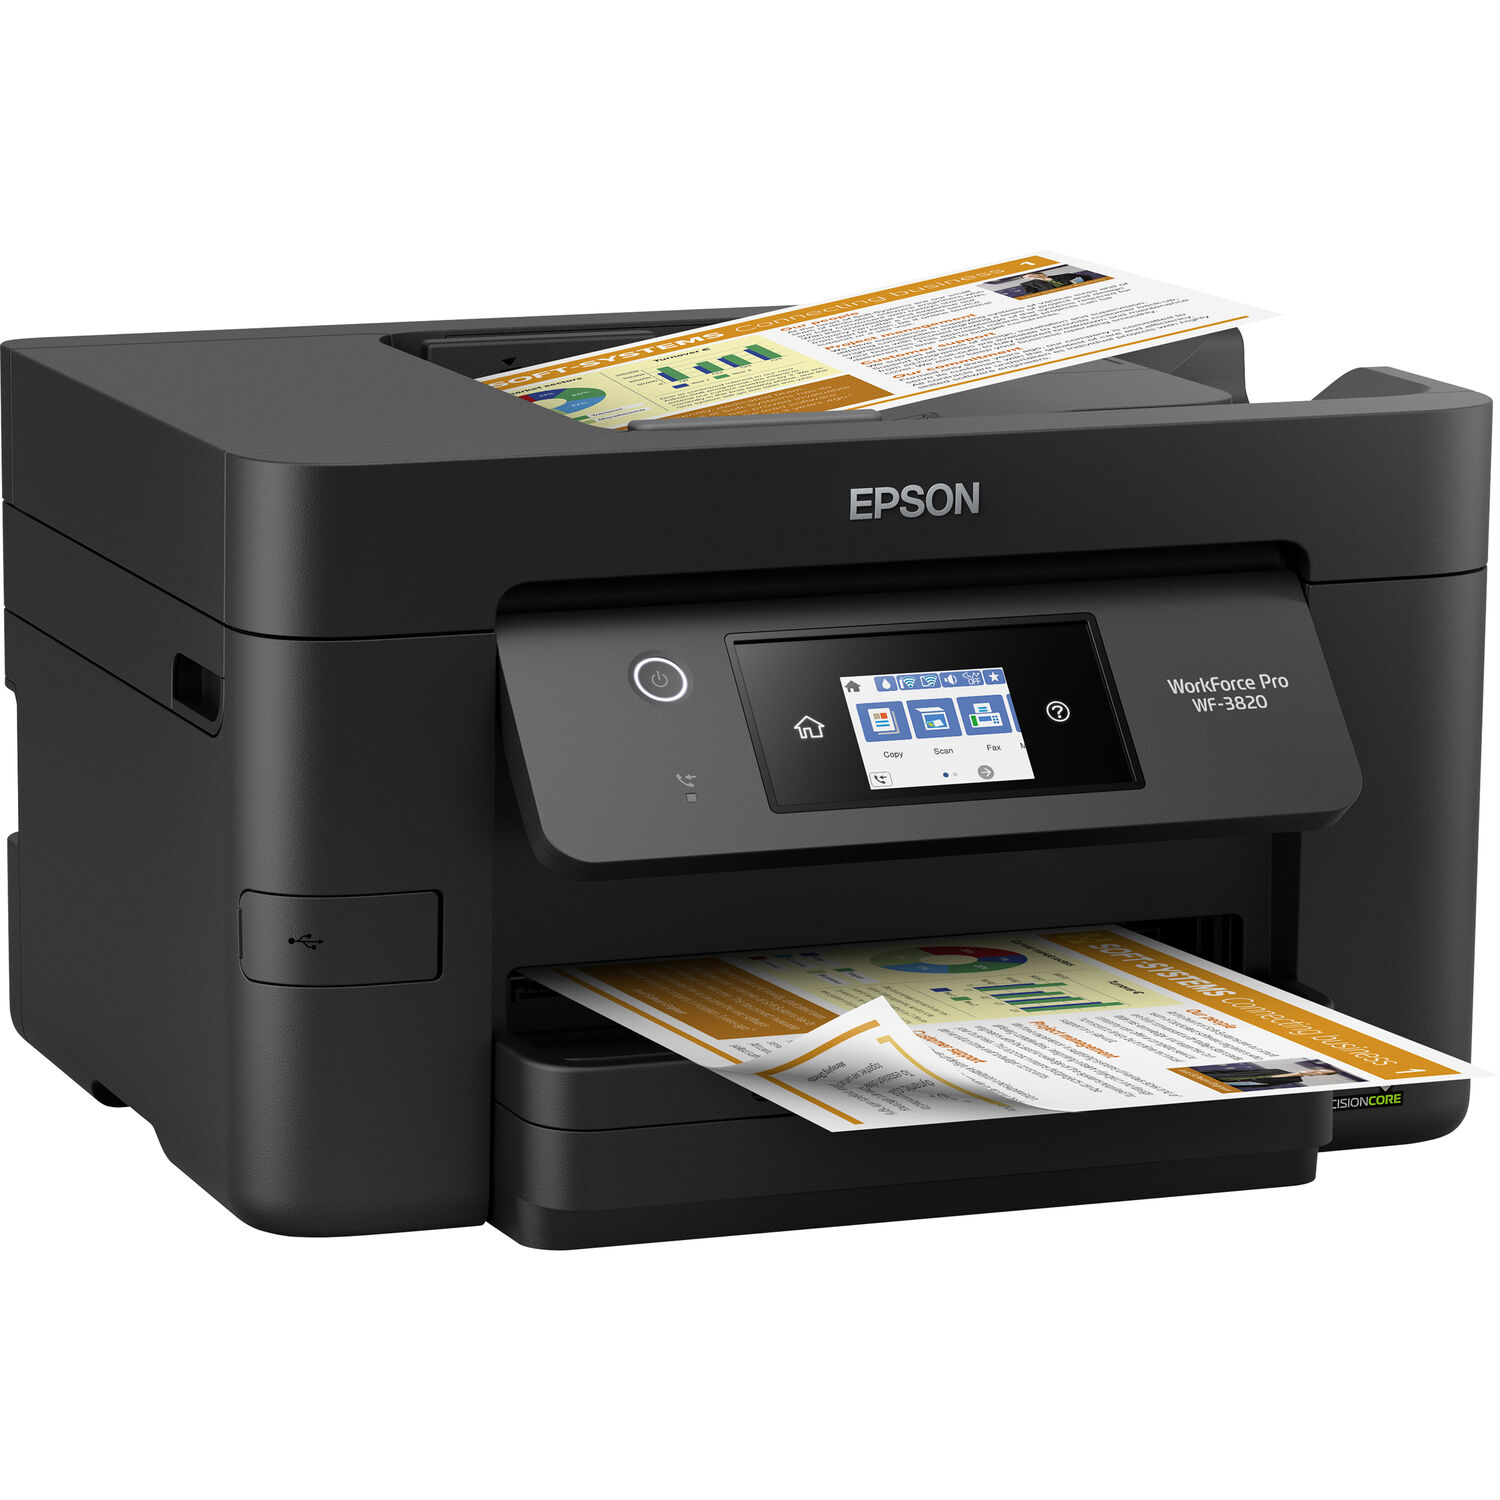 Impresora de Inyección de Tinta Epson Workforce Pro Wf 3820 All In One